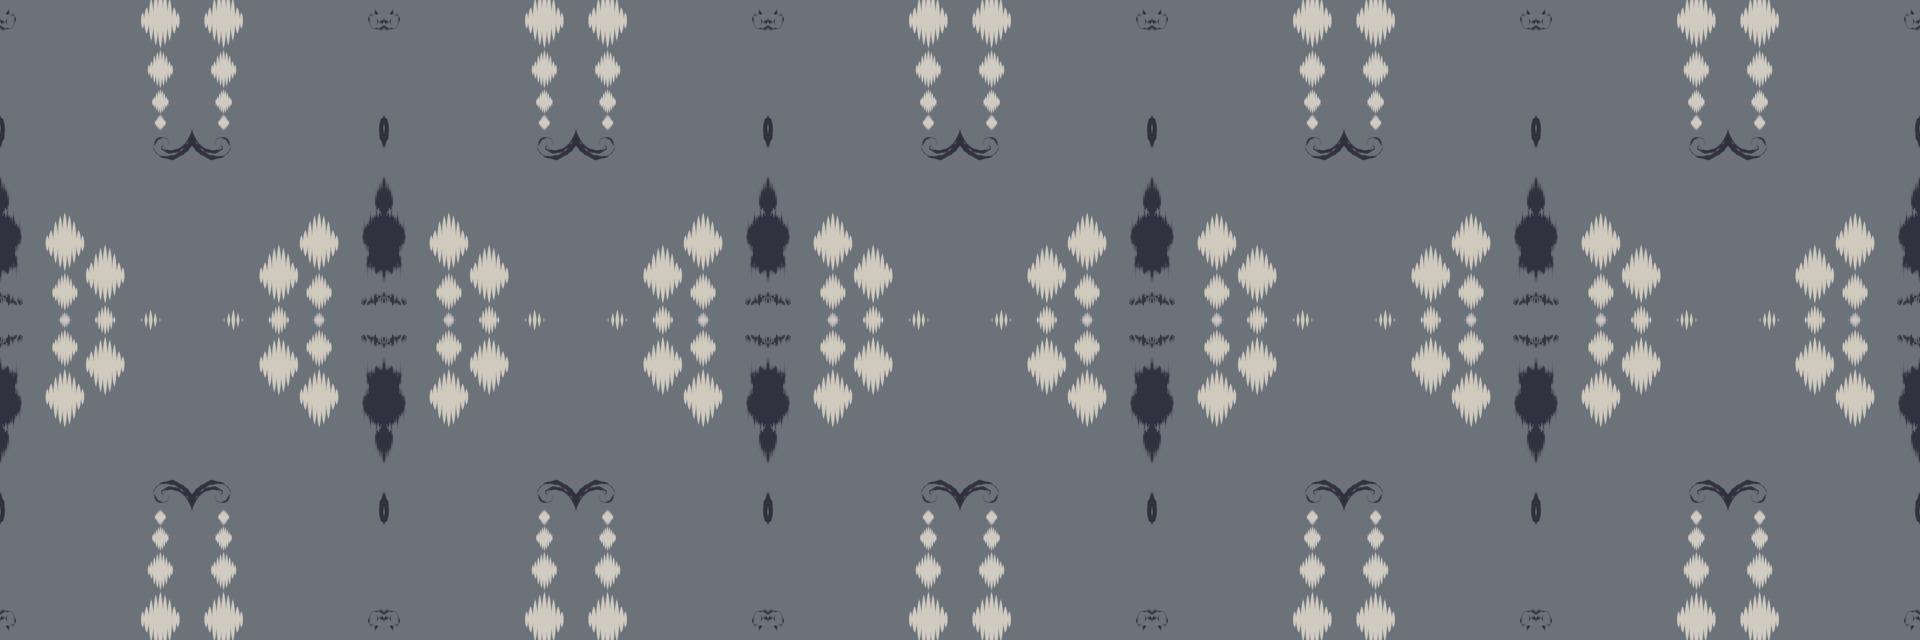 motivo textil batik ikat damasco patrón sin costuras diseño vectorial digital para imprimir saree kurti borneo borde de tela símbolos de pincel muestras diseñador vector